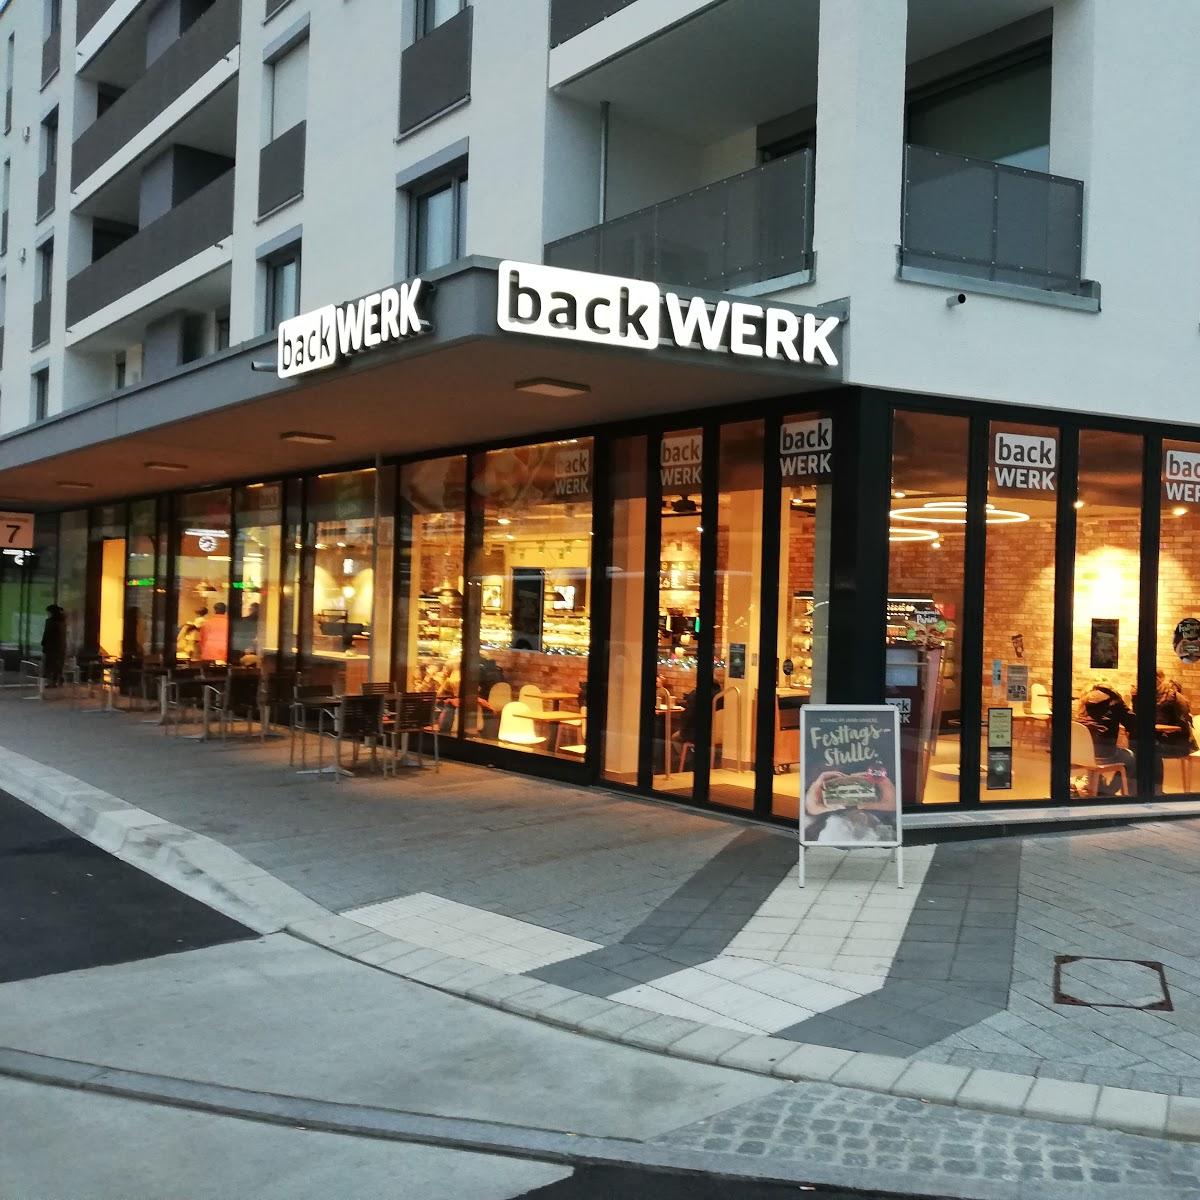 Restaurant "BackWerk" in Aalen